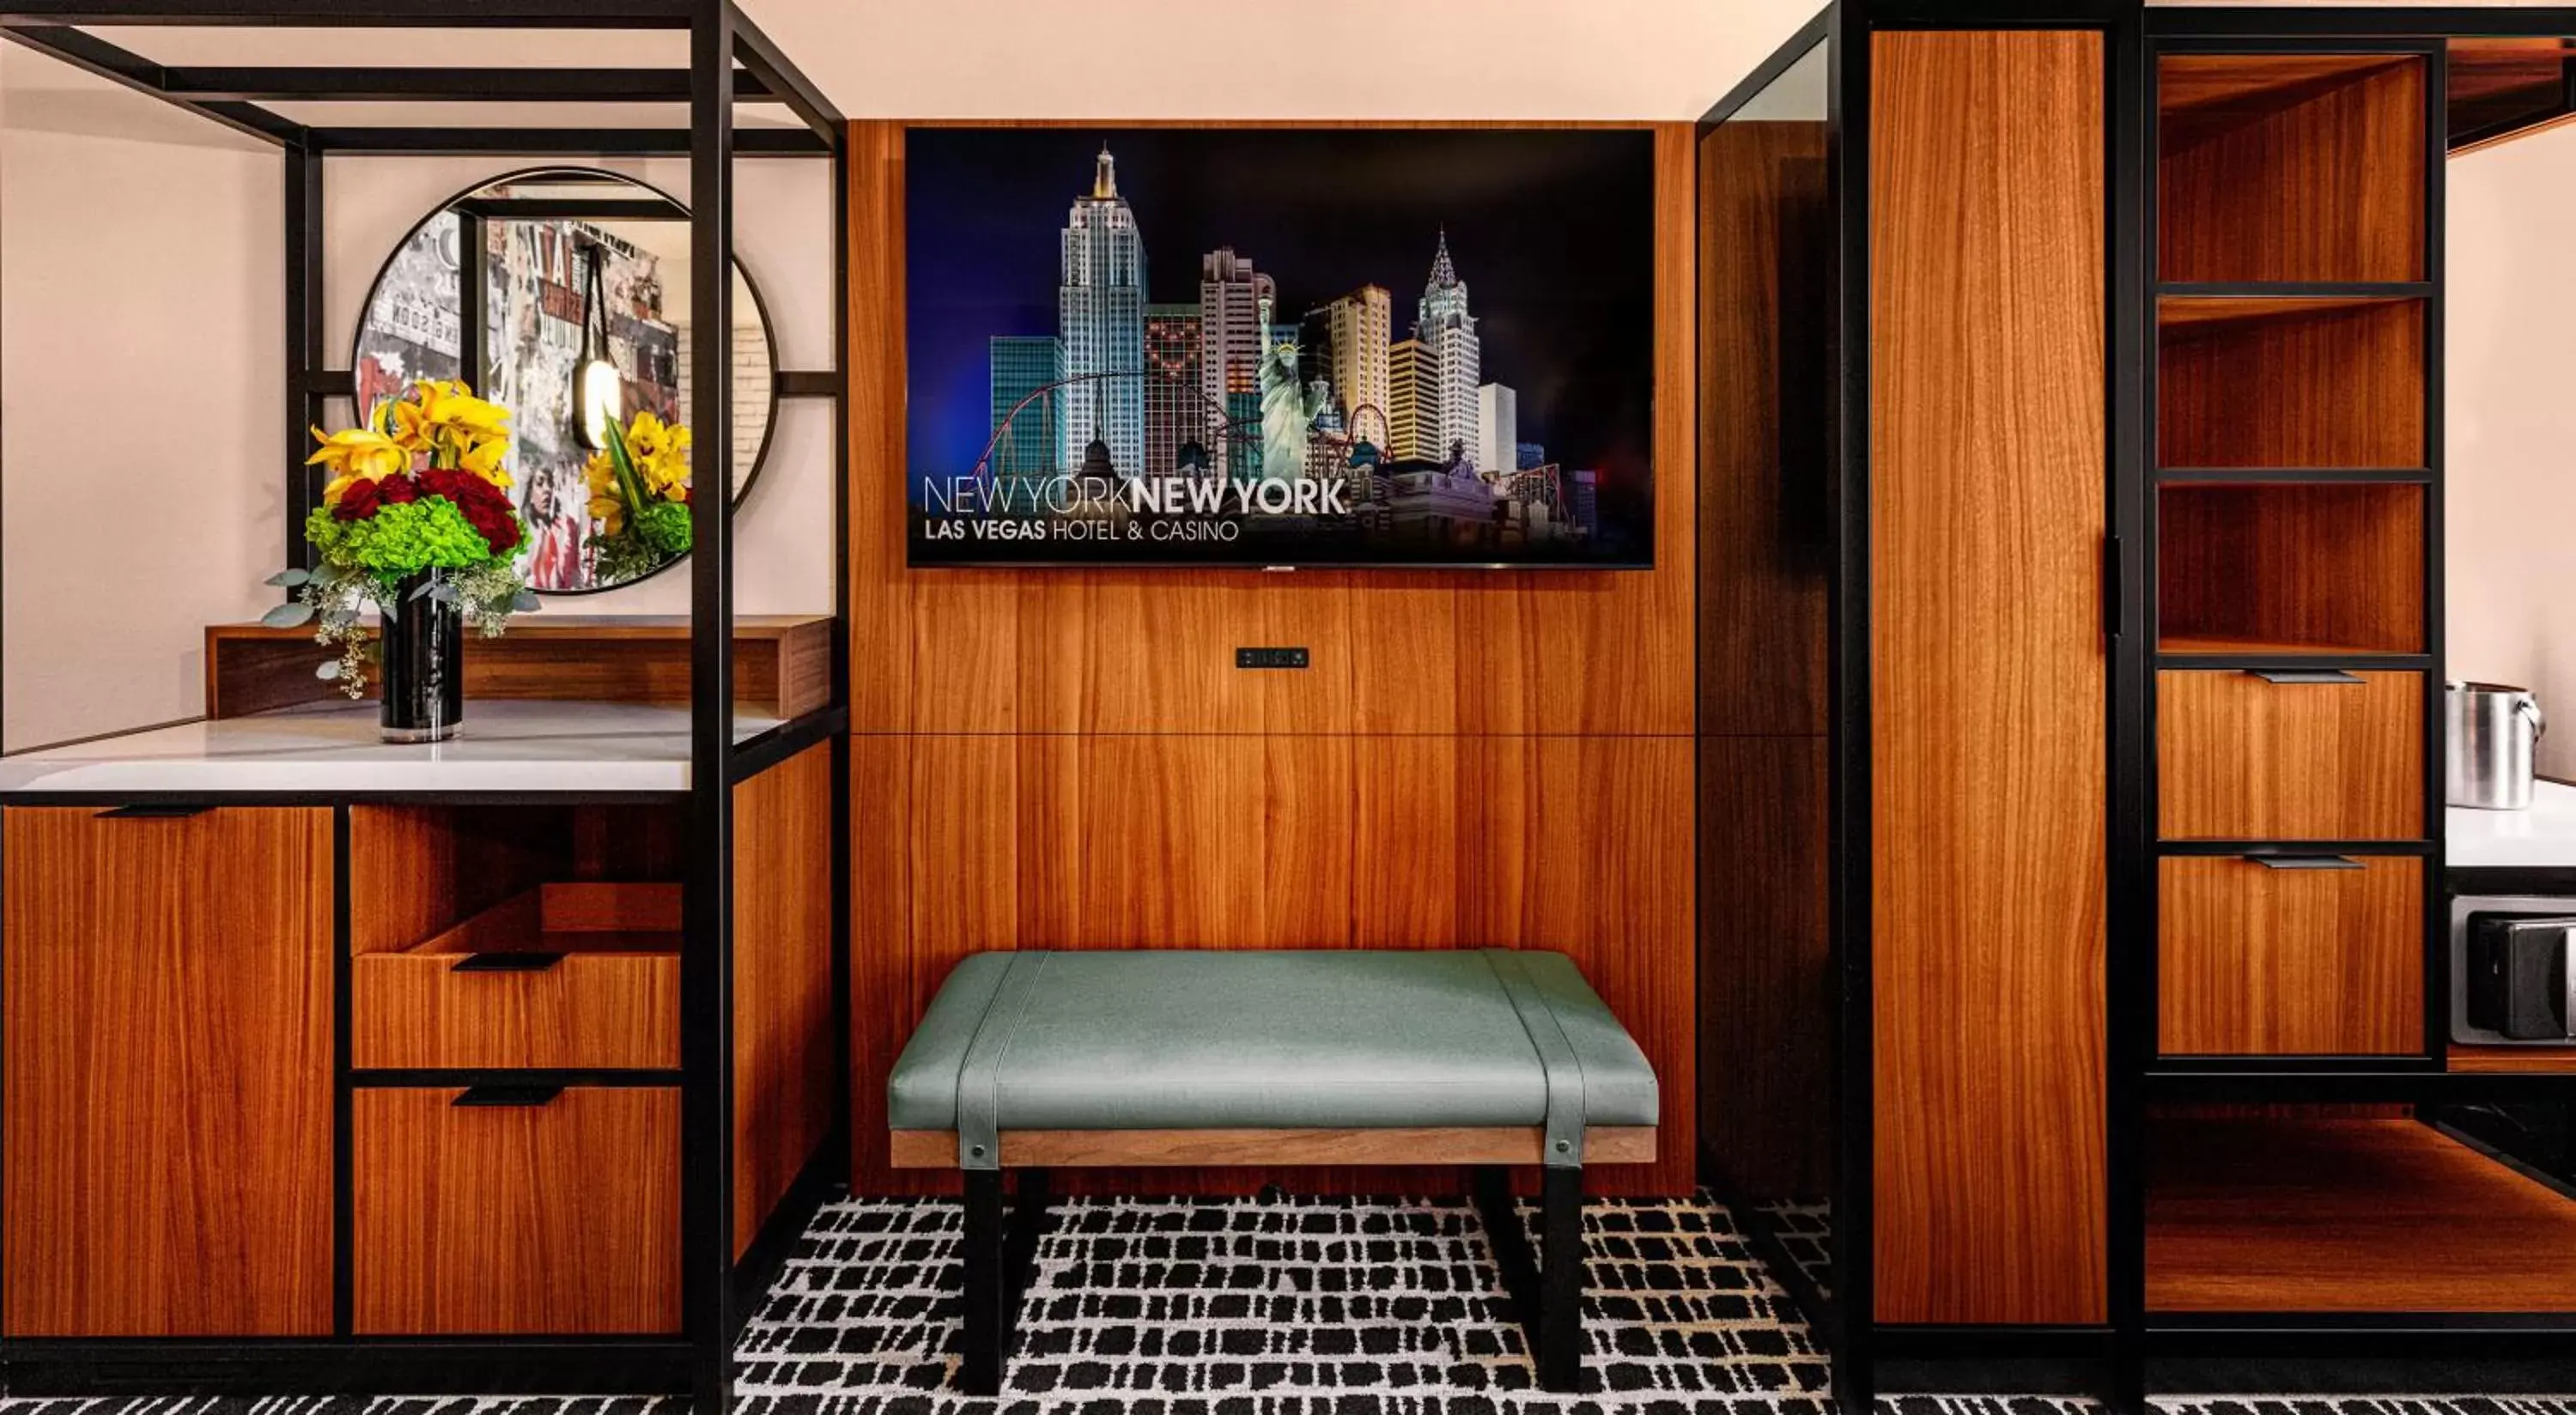 Bedroom, TV/Entertainment Center in New York New York